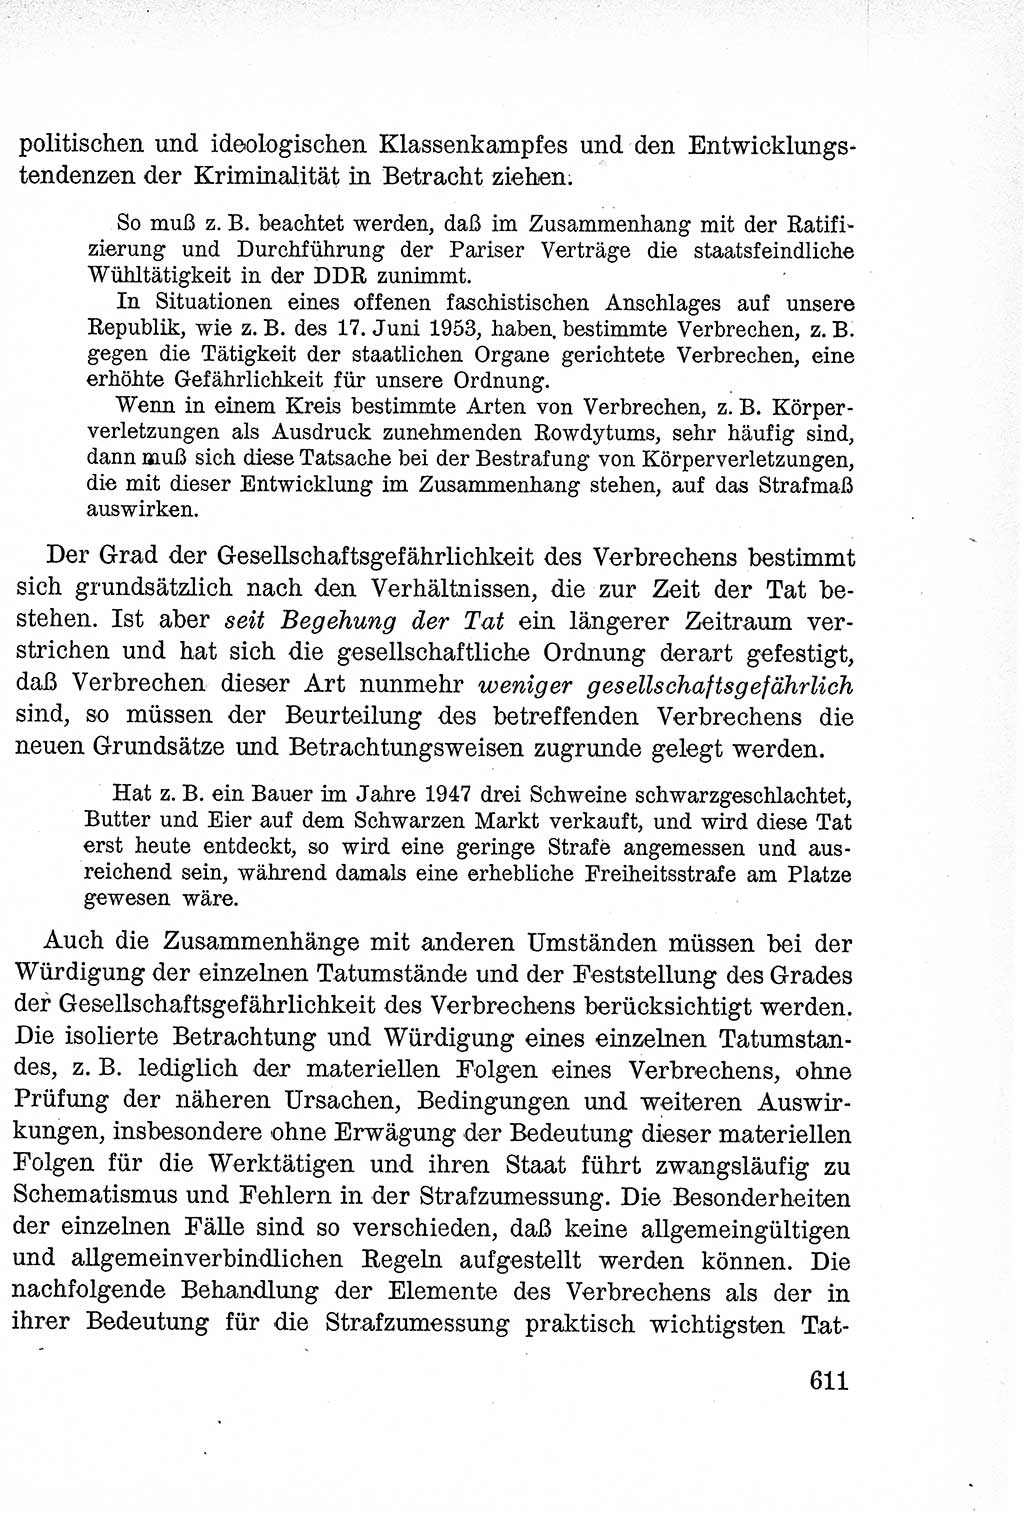 Lehrbuch des Strafrechts der Deutschen Demokratischen Republik (DDR), Allgemeiner Teil 1957, Seite 611 (Lb. Strafr. DDR AT 1957, S. 611)